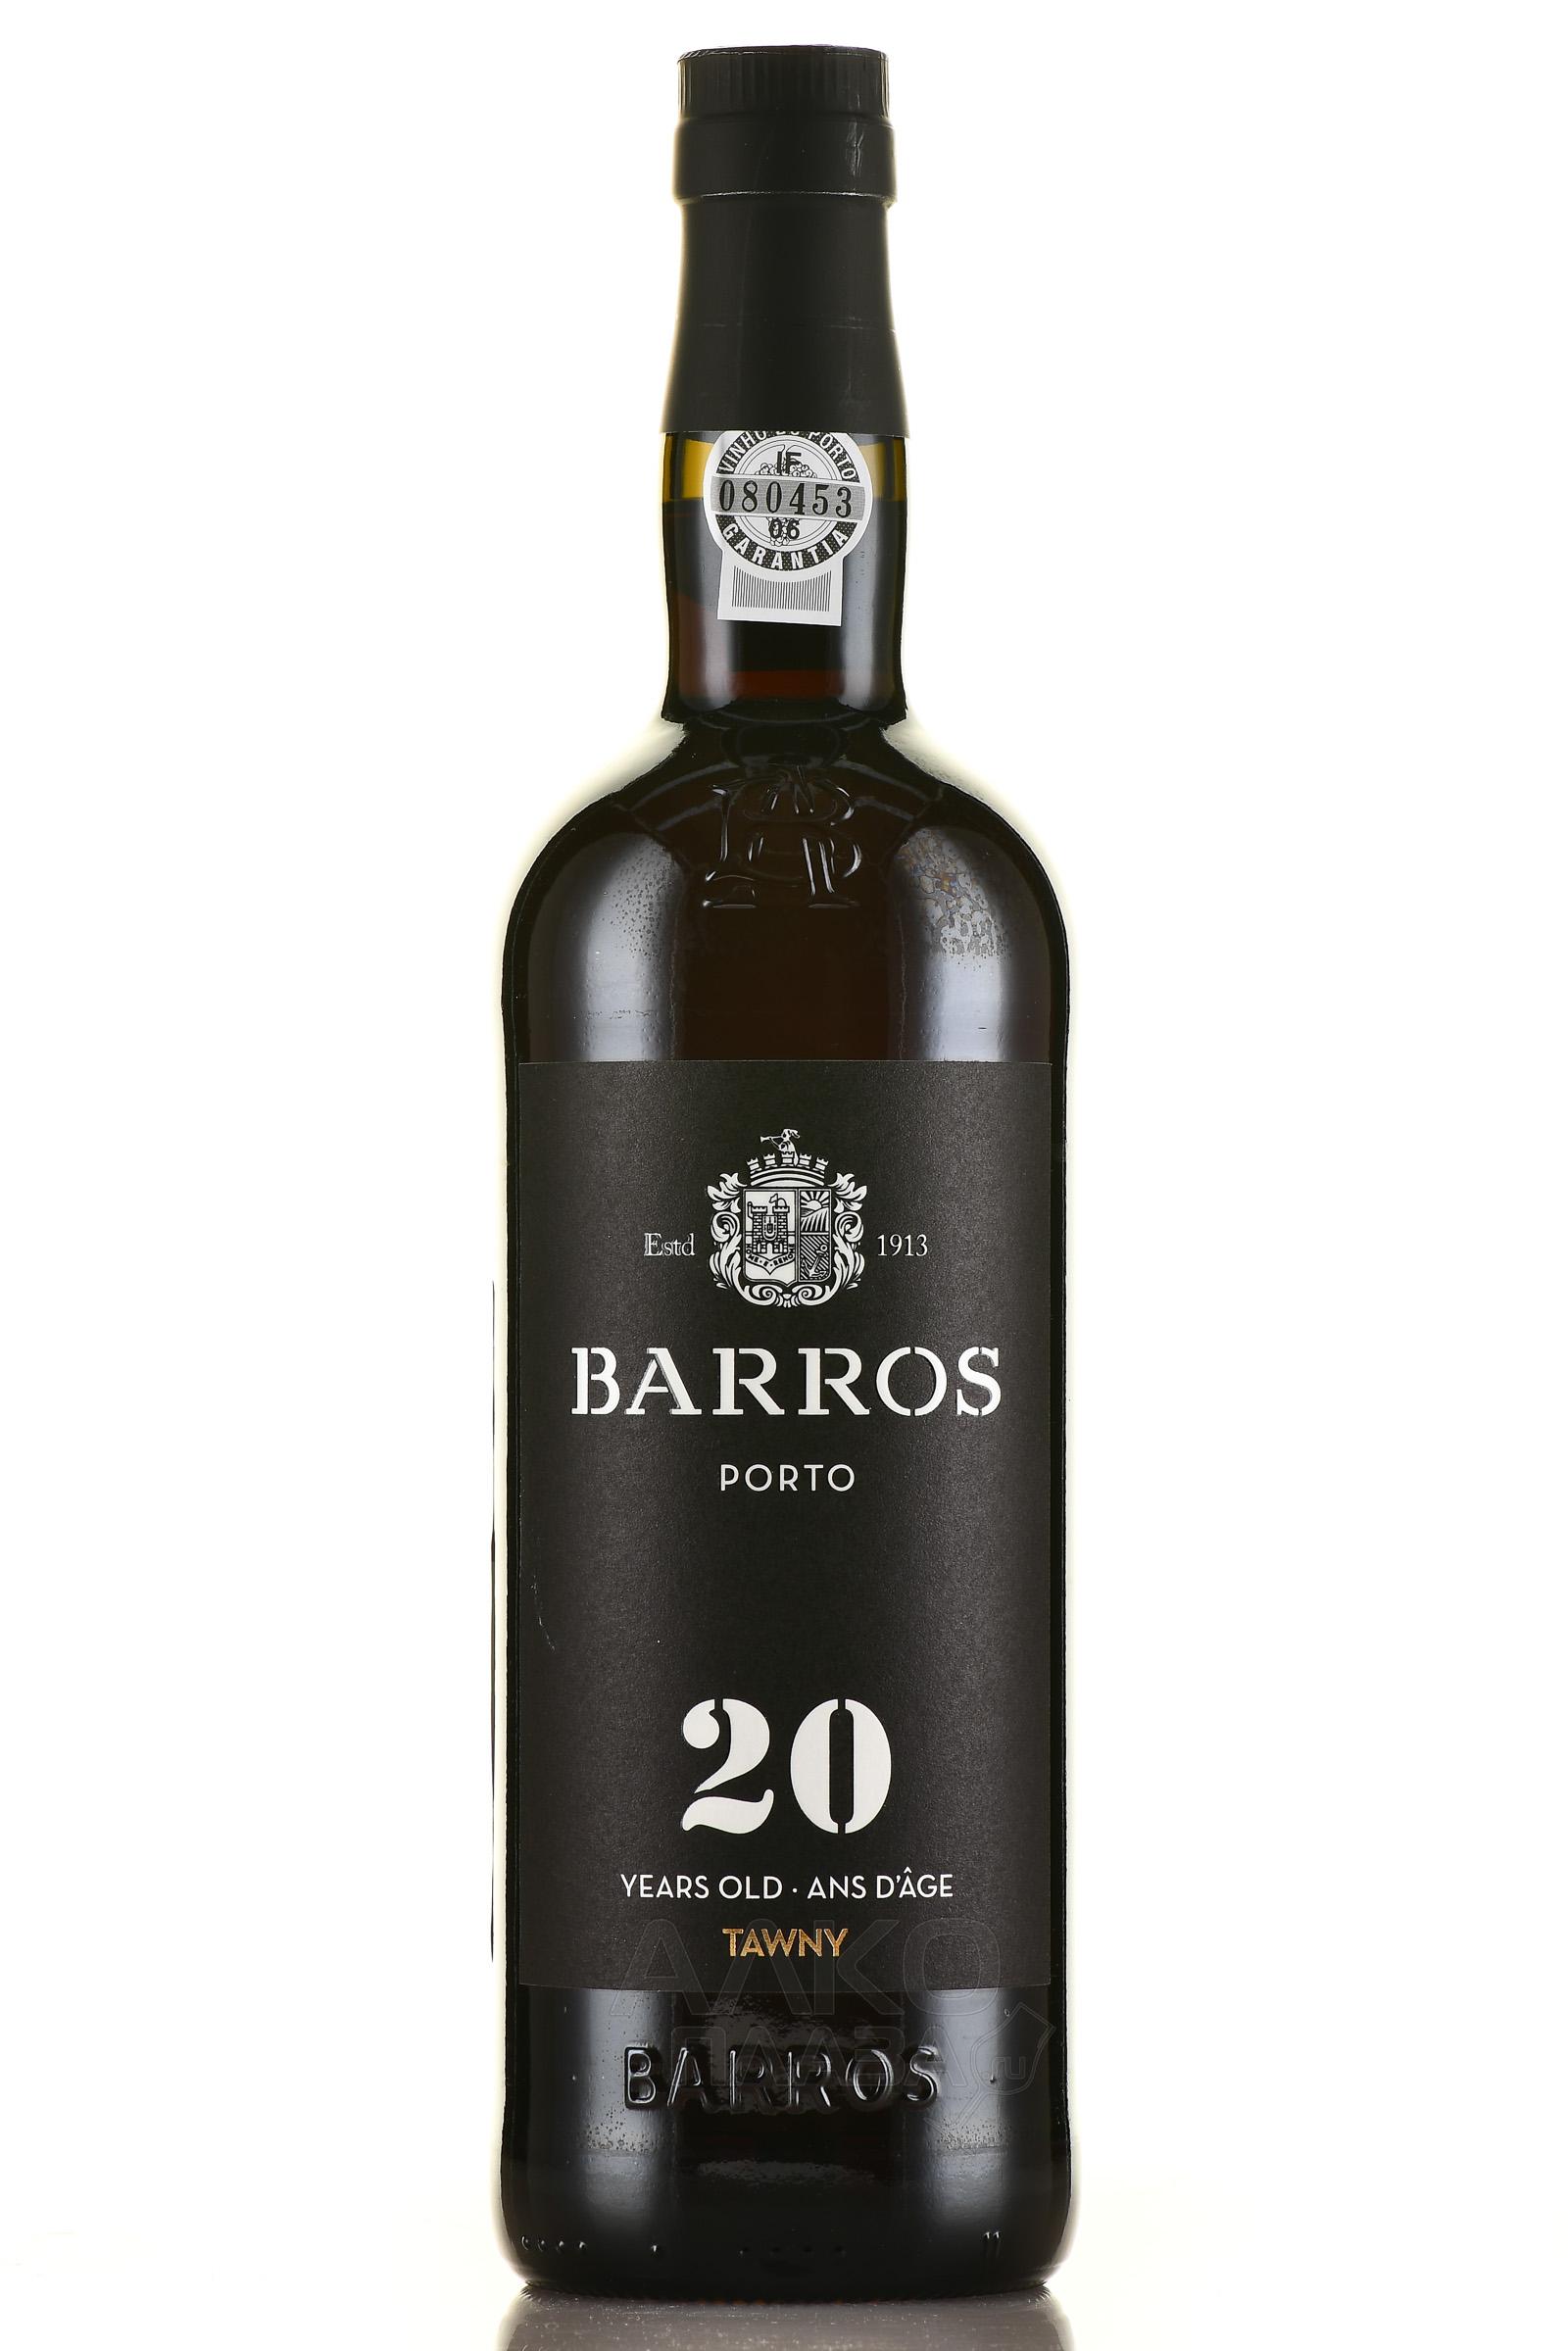 Крепленое (ликерное) вино крепкое марочное (портвейн) Порто Барруш Тони  2017г креп 19,5%, емк  0,75 л